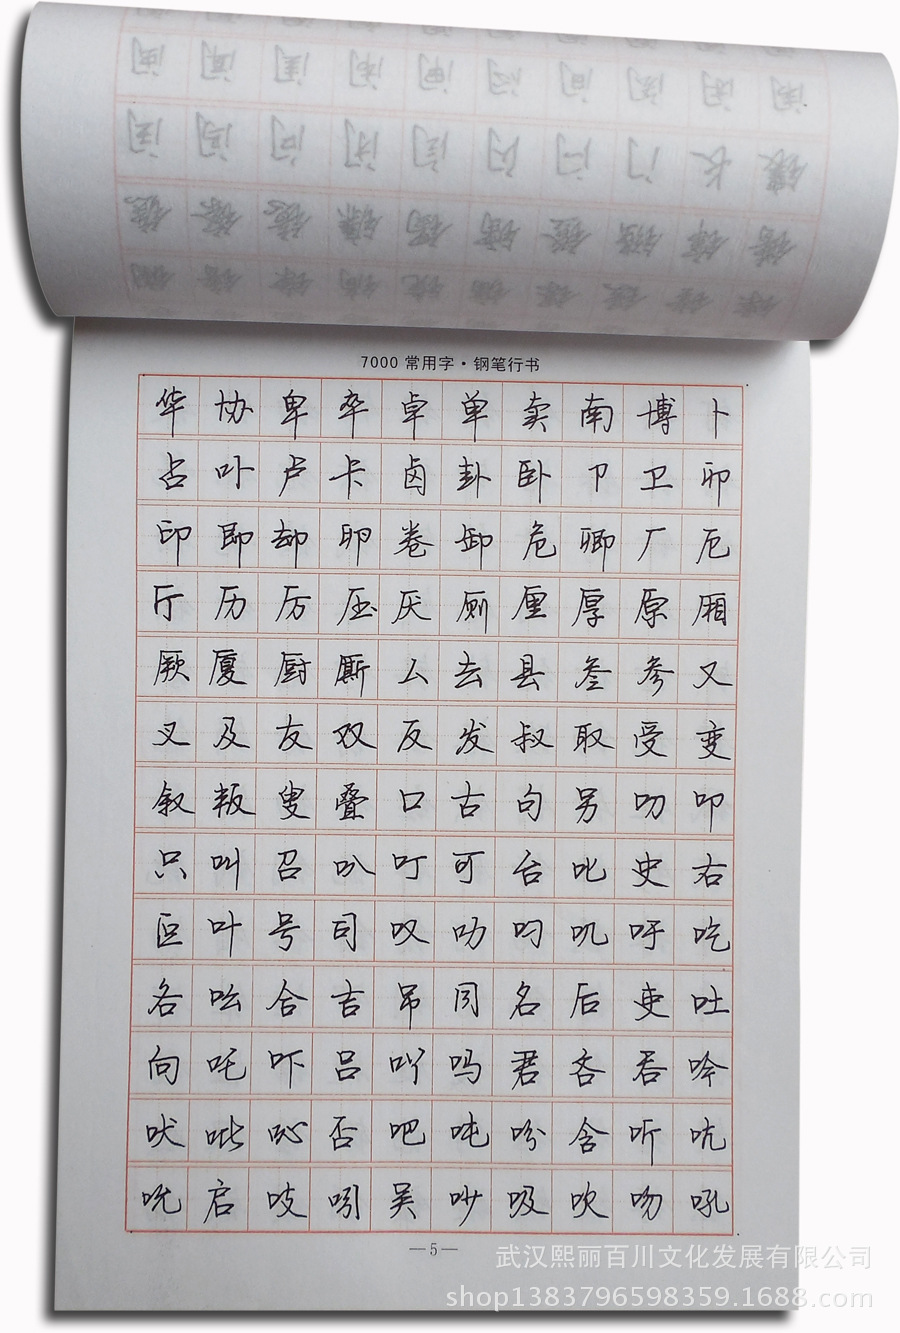 500张字帖临摹纸 拷贝纸 学生演算草稿纸